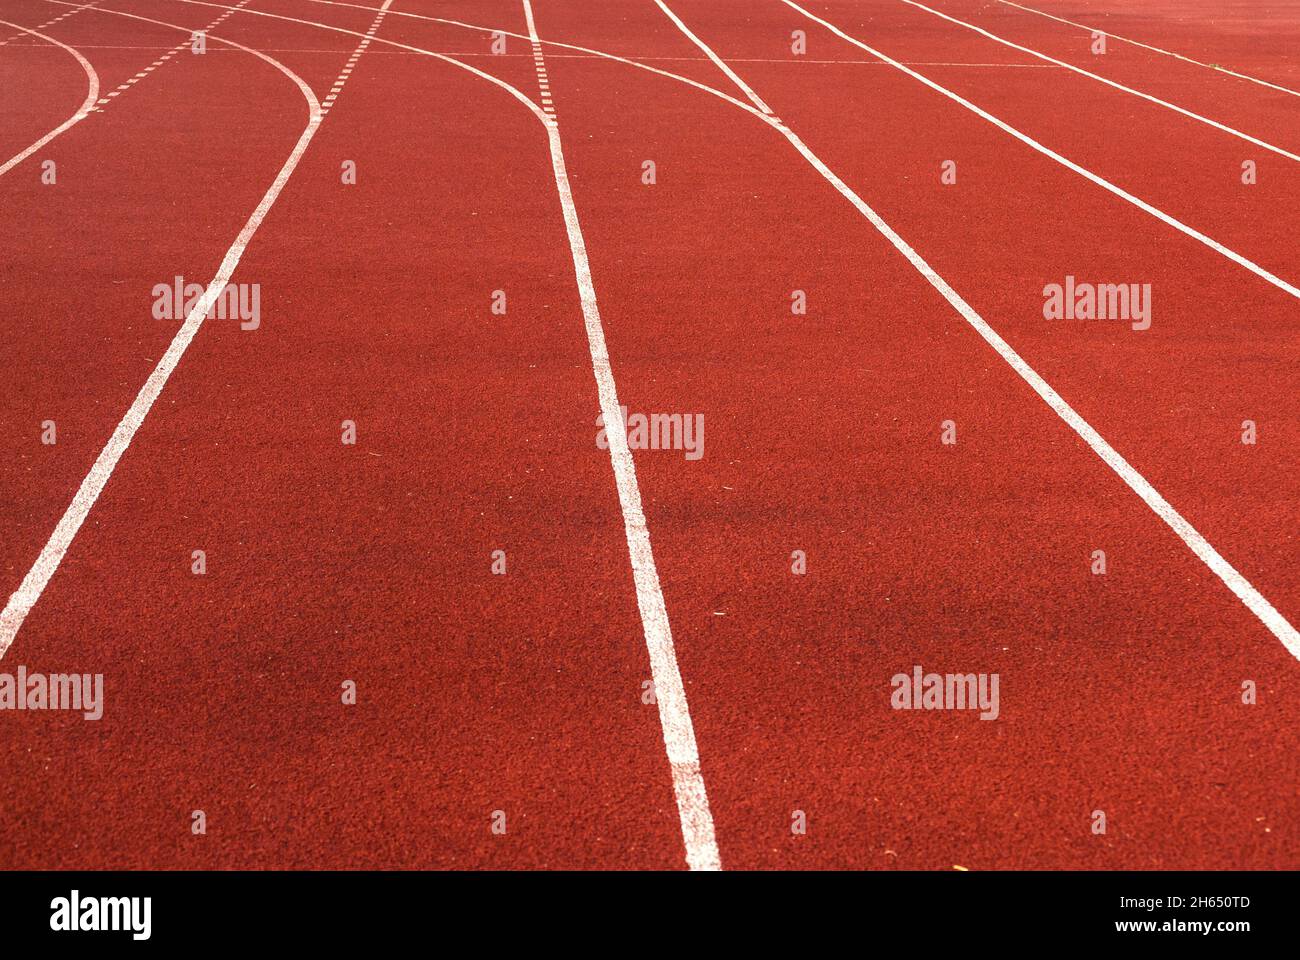 Pista atletica superficie rossa con linee bianche primo piano Foto Stock